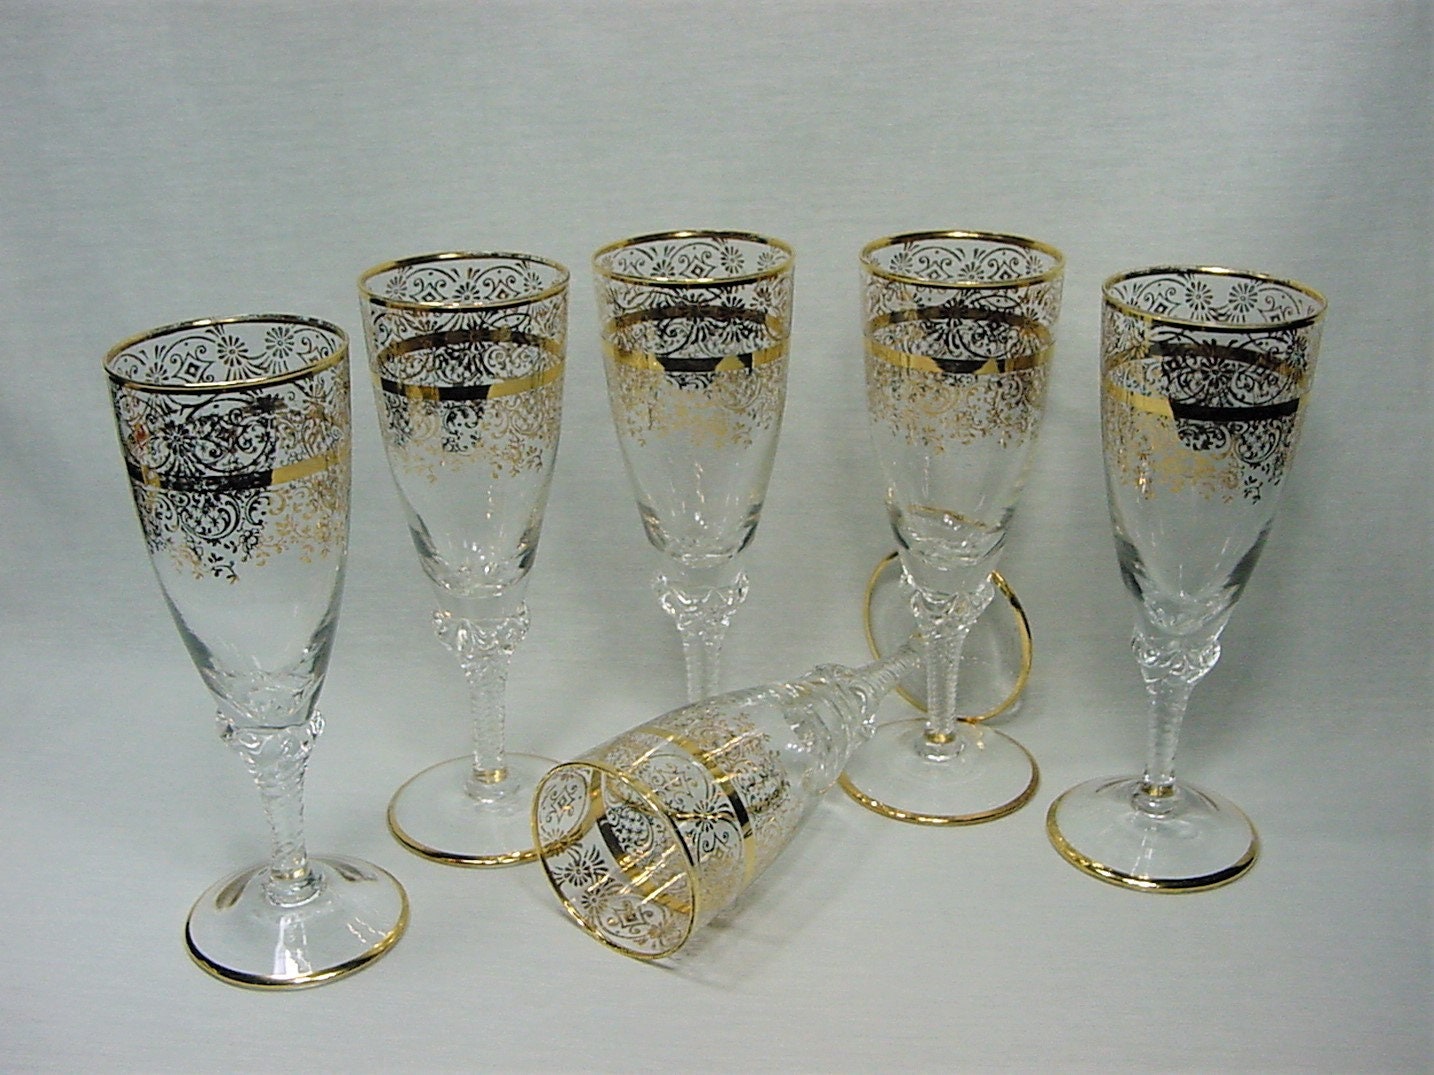 Murano Glass Champagne Flute - Getty Museum Store